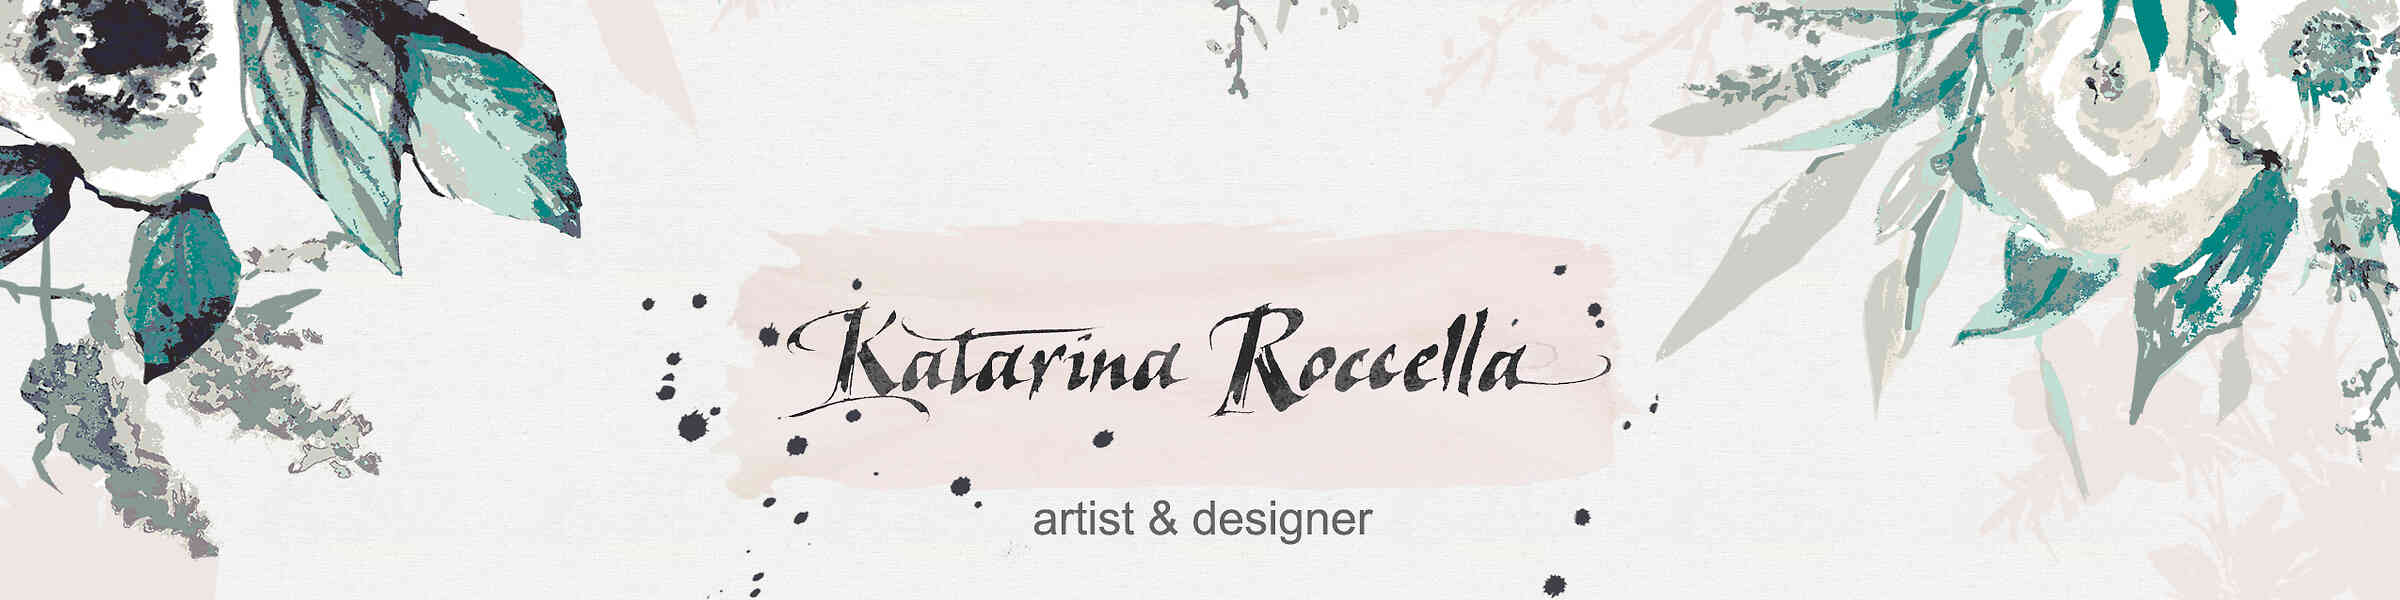 Artist shop banner image